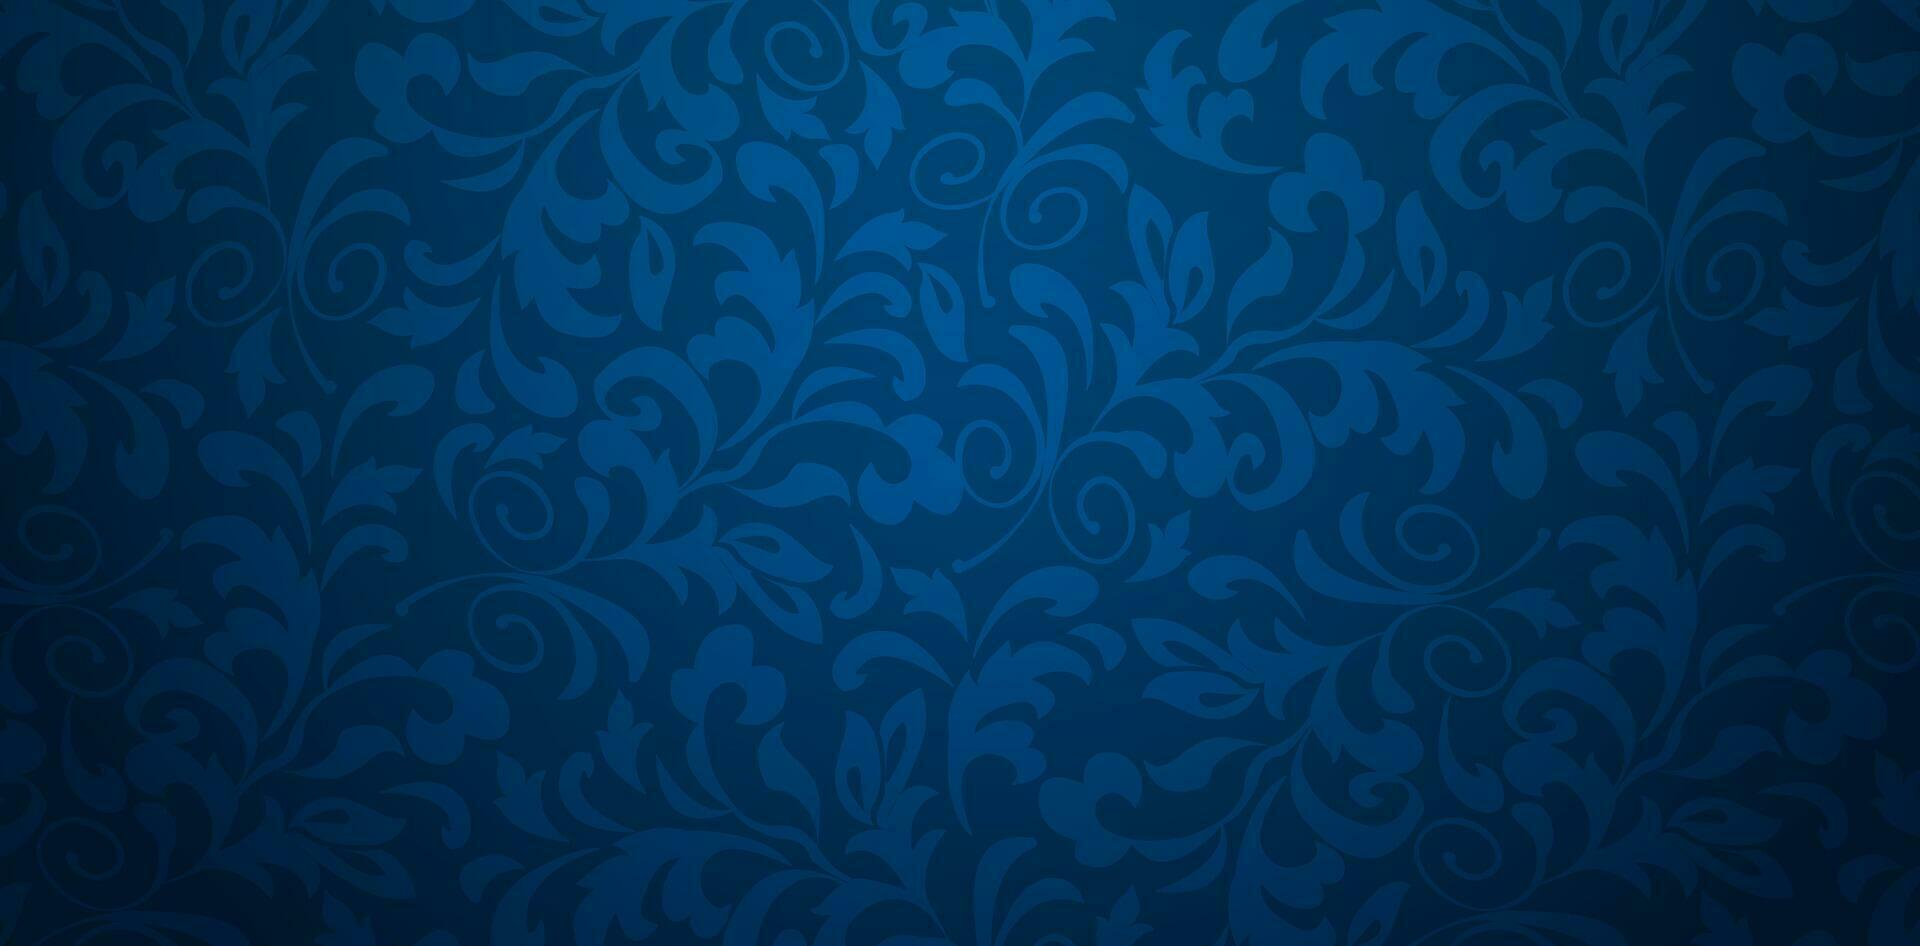 vektor illustration mörk blå bakgrund med blommig prydnad sömlös damast- tapet för presentationer marknadsföring, däck, annonser, böcker täcker, digital gränssnitt, skriva ut design mallar material